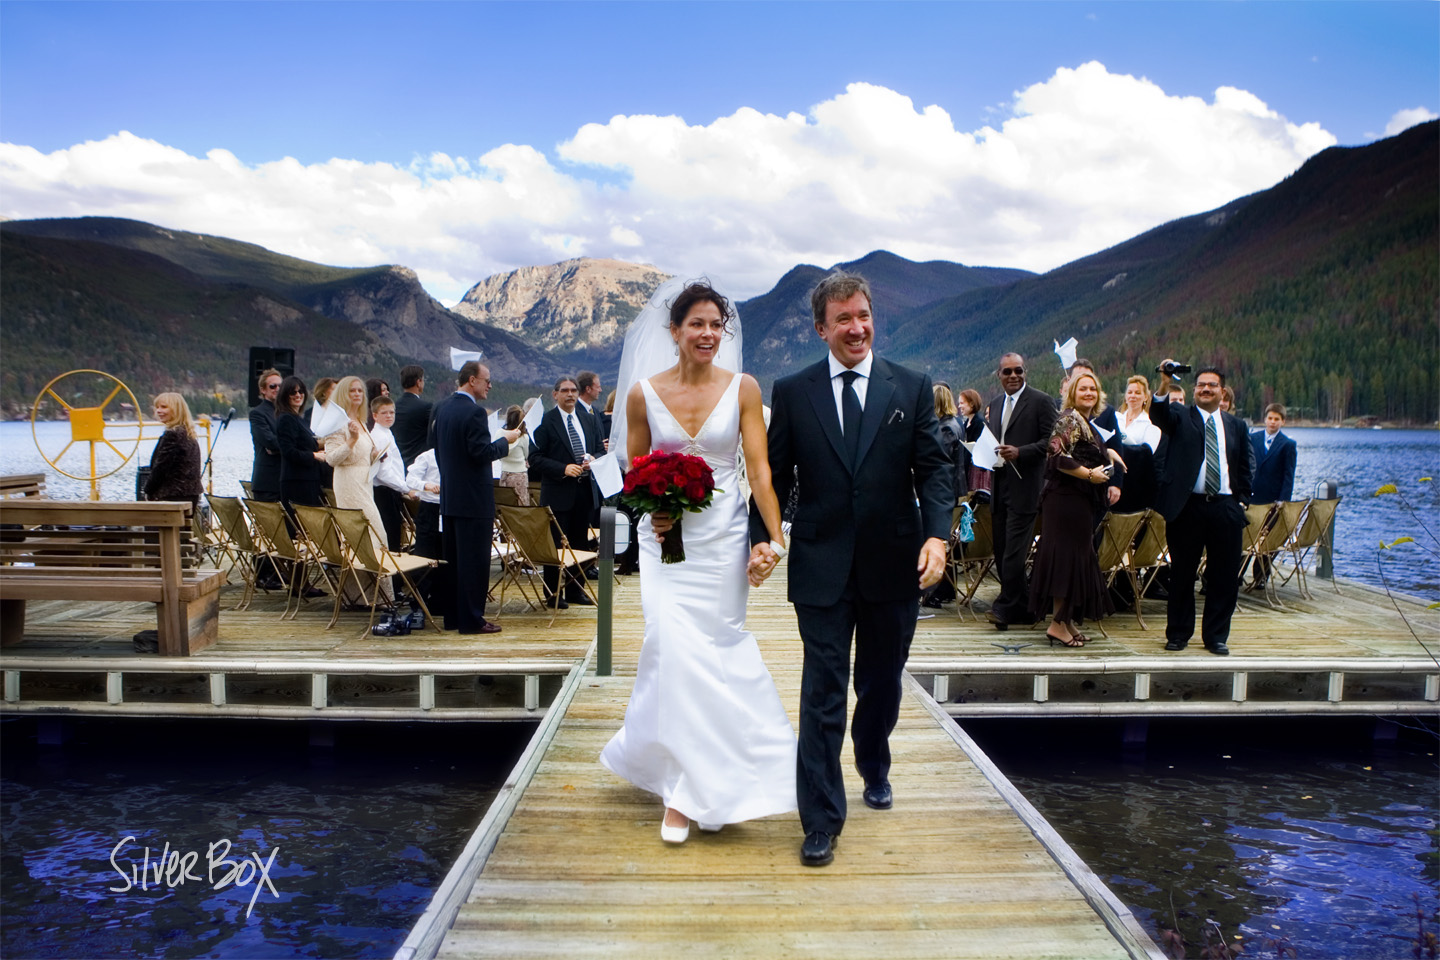 ?Tim Allen and Jane Hajduk on their wedding